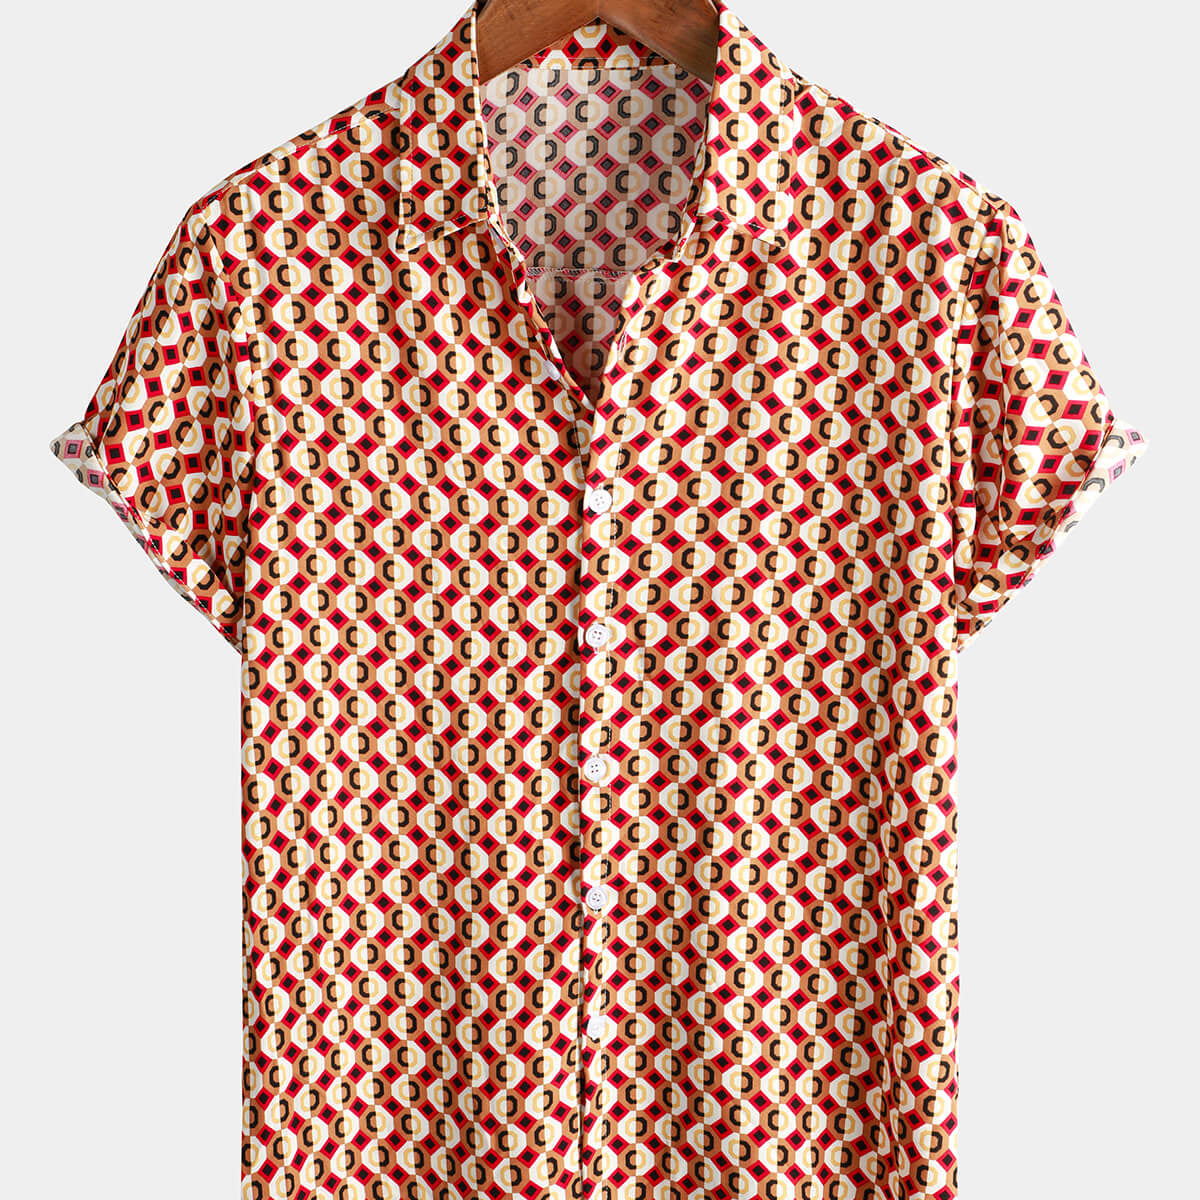 Camisa de manga corta de verano con botones para fiesta disco, estilo retro geométrico de los años 70, para hombre